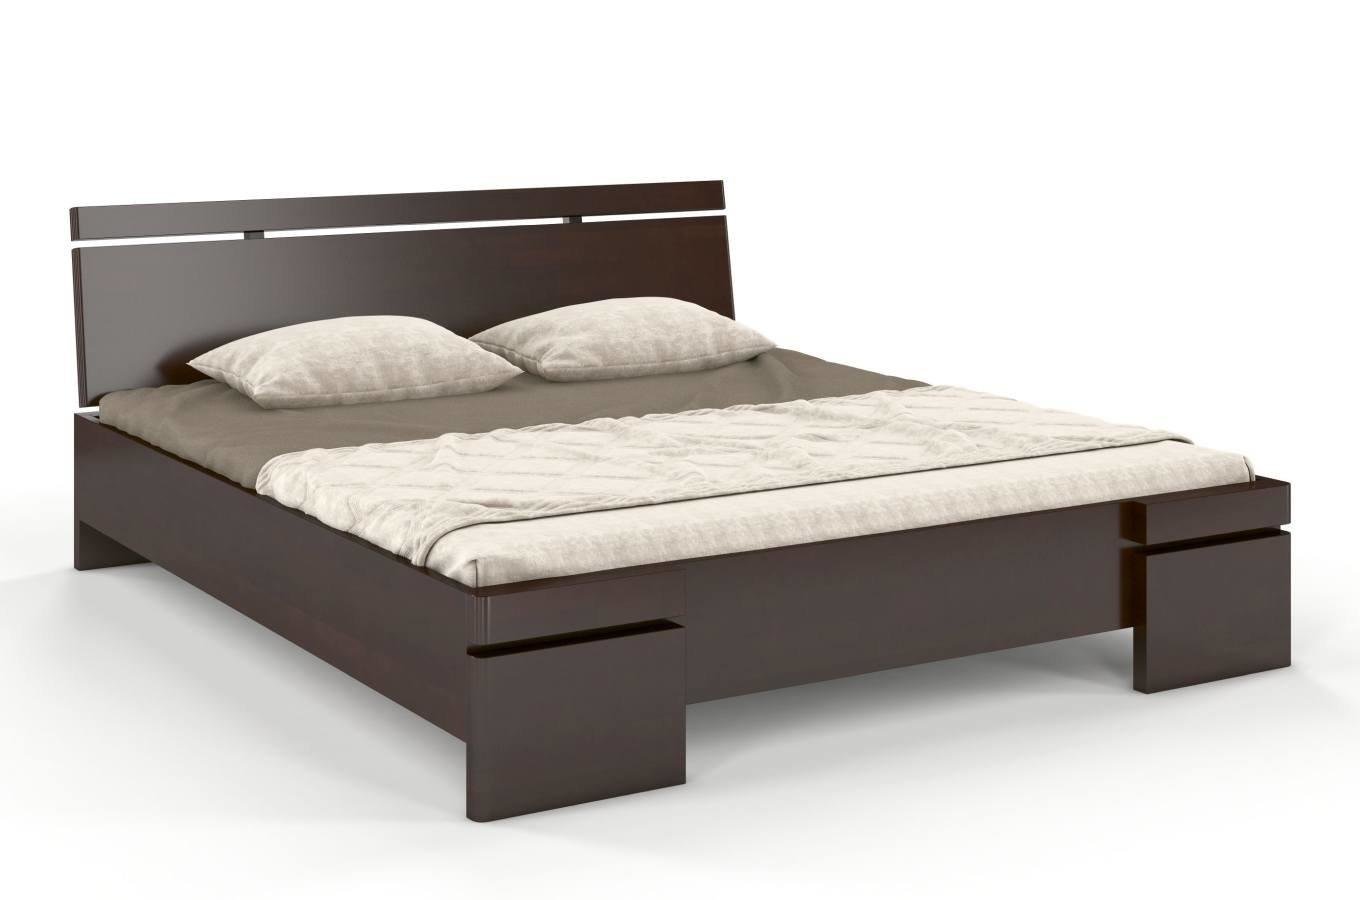 Łóżko drewniane bukowe ze skrzynią na pościel Skandica SPARTA Maxi & ST / 200x200 cm, kolor palisander